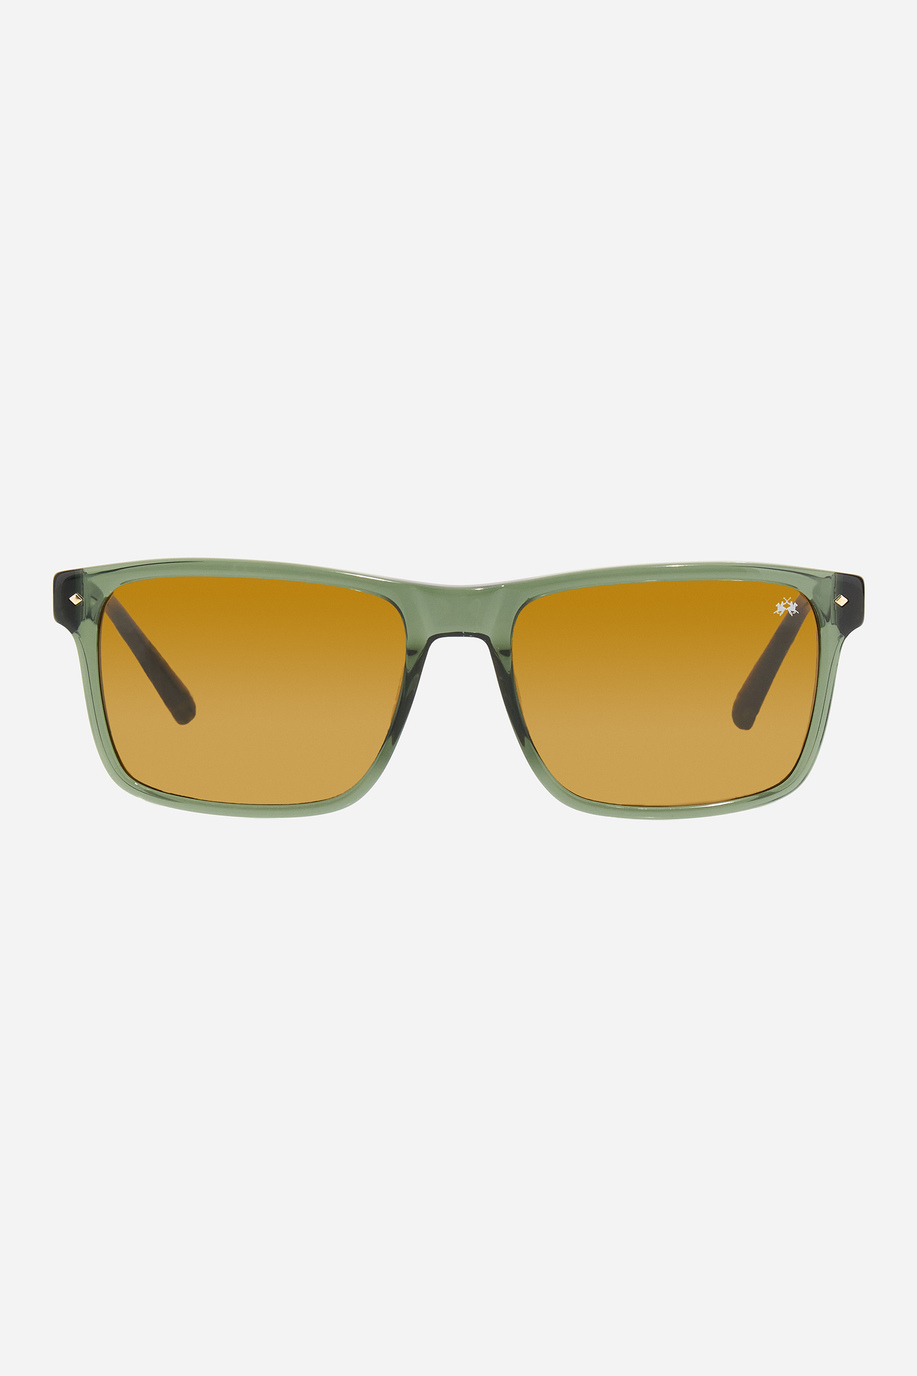 Rectangular men's sunglasses - Glasses | La Martina - Official Online Shop